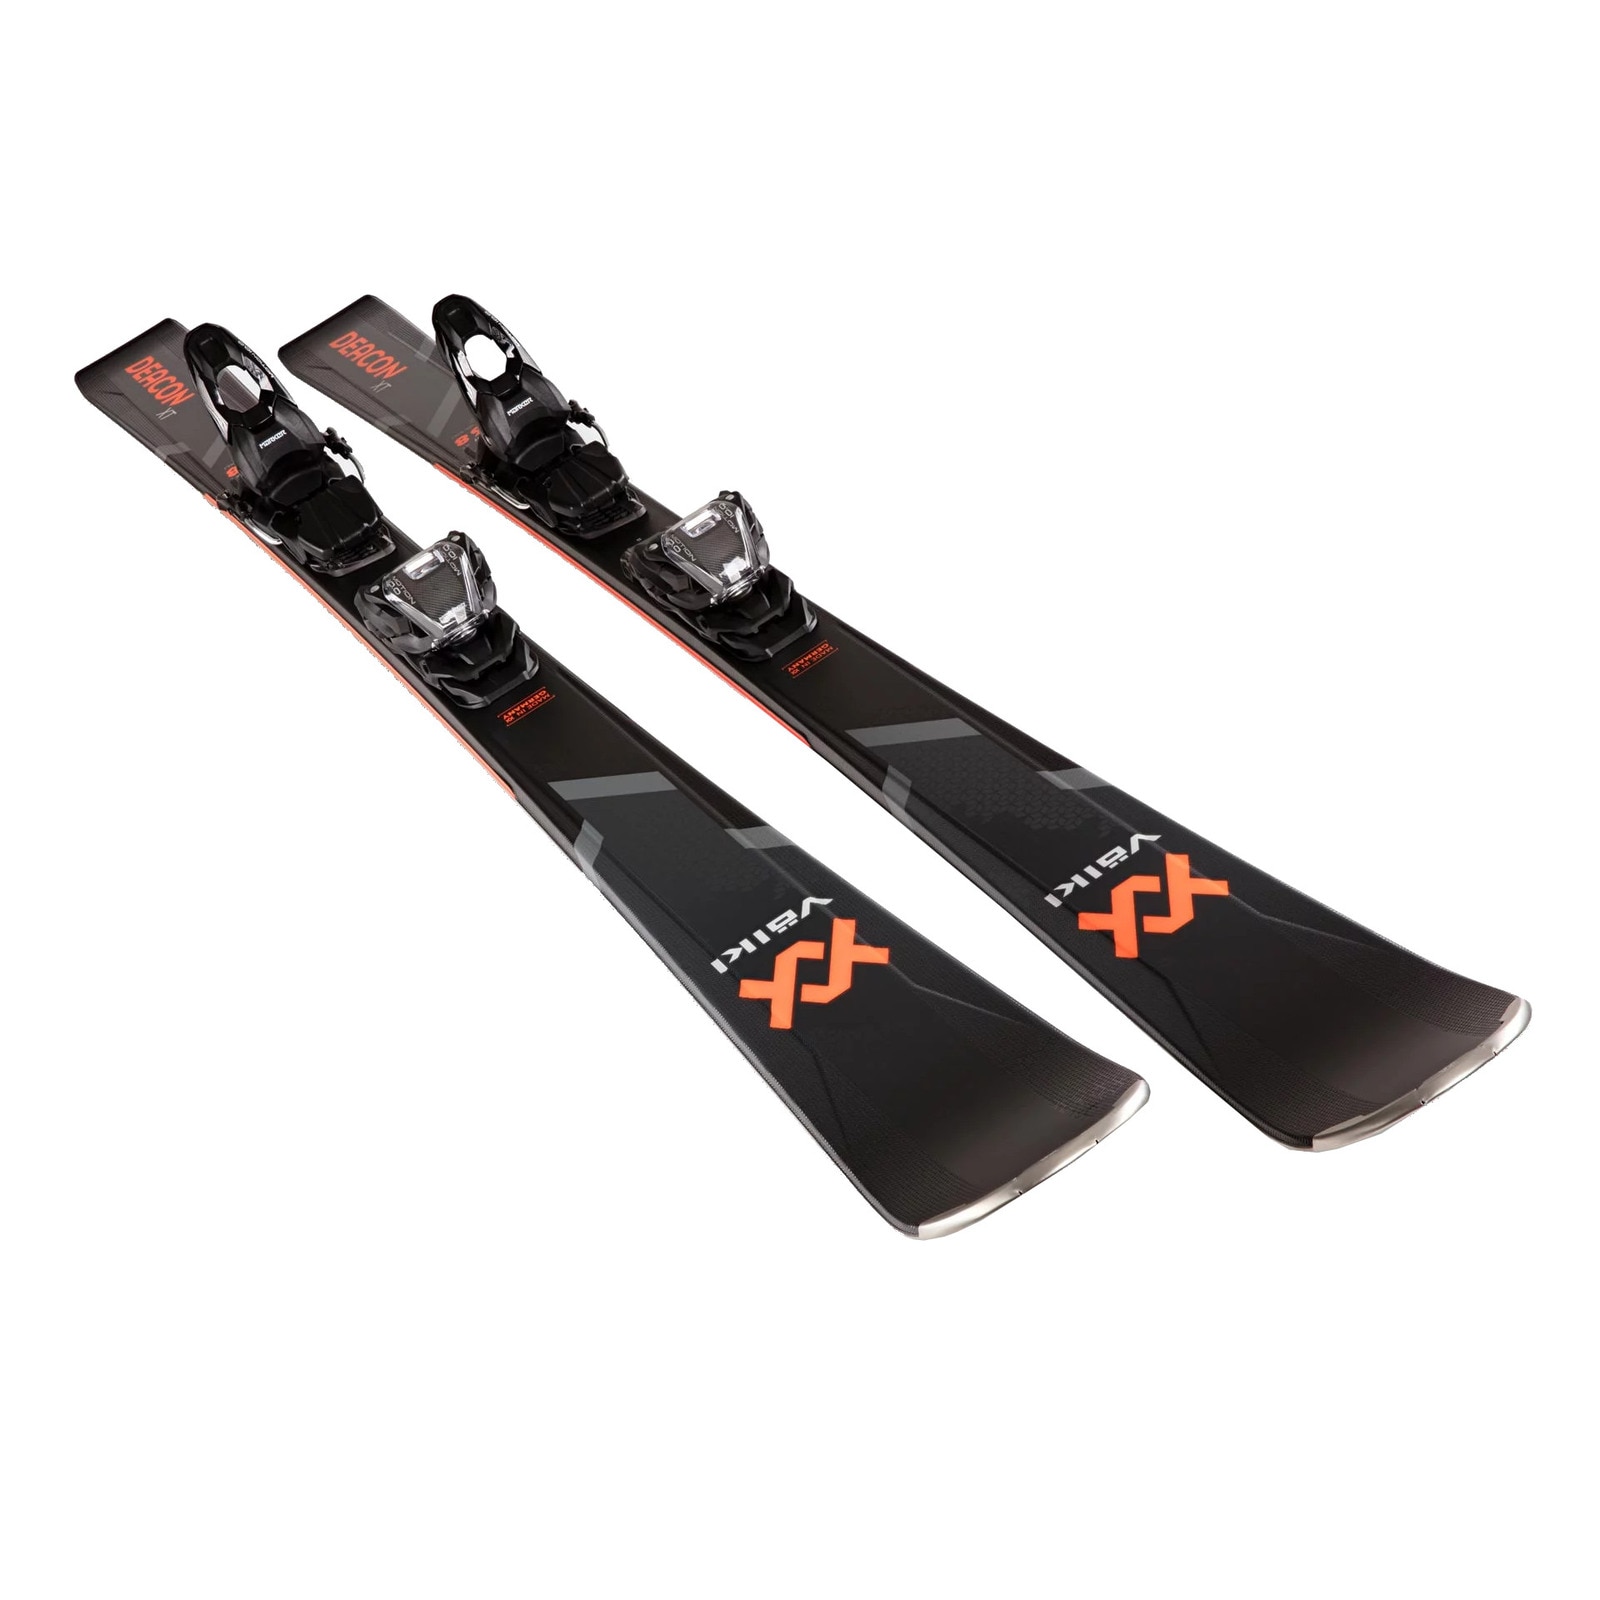 スキー セット VOLKL フォルクル スキー板 2020 DEACON 7.6 GOLD   FDT TP10   DALBELLO ブーツ DS AX 80 W   ストックPK   スキーケース   ブーツケース